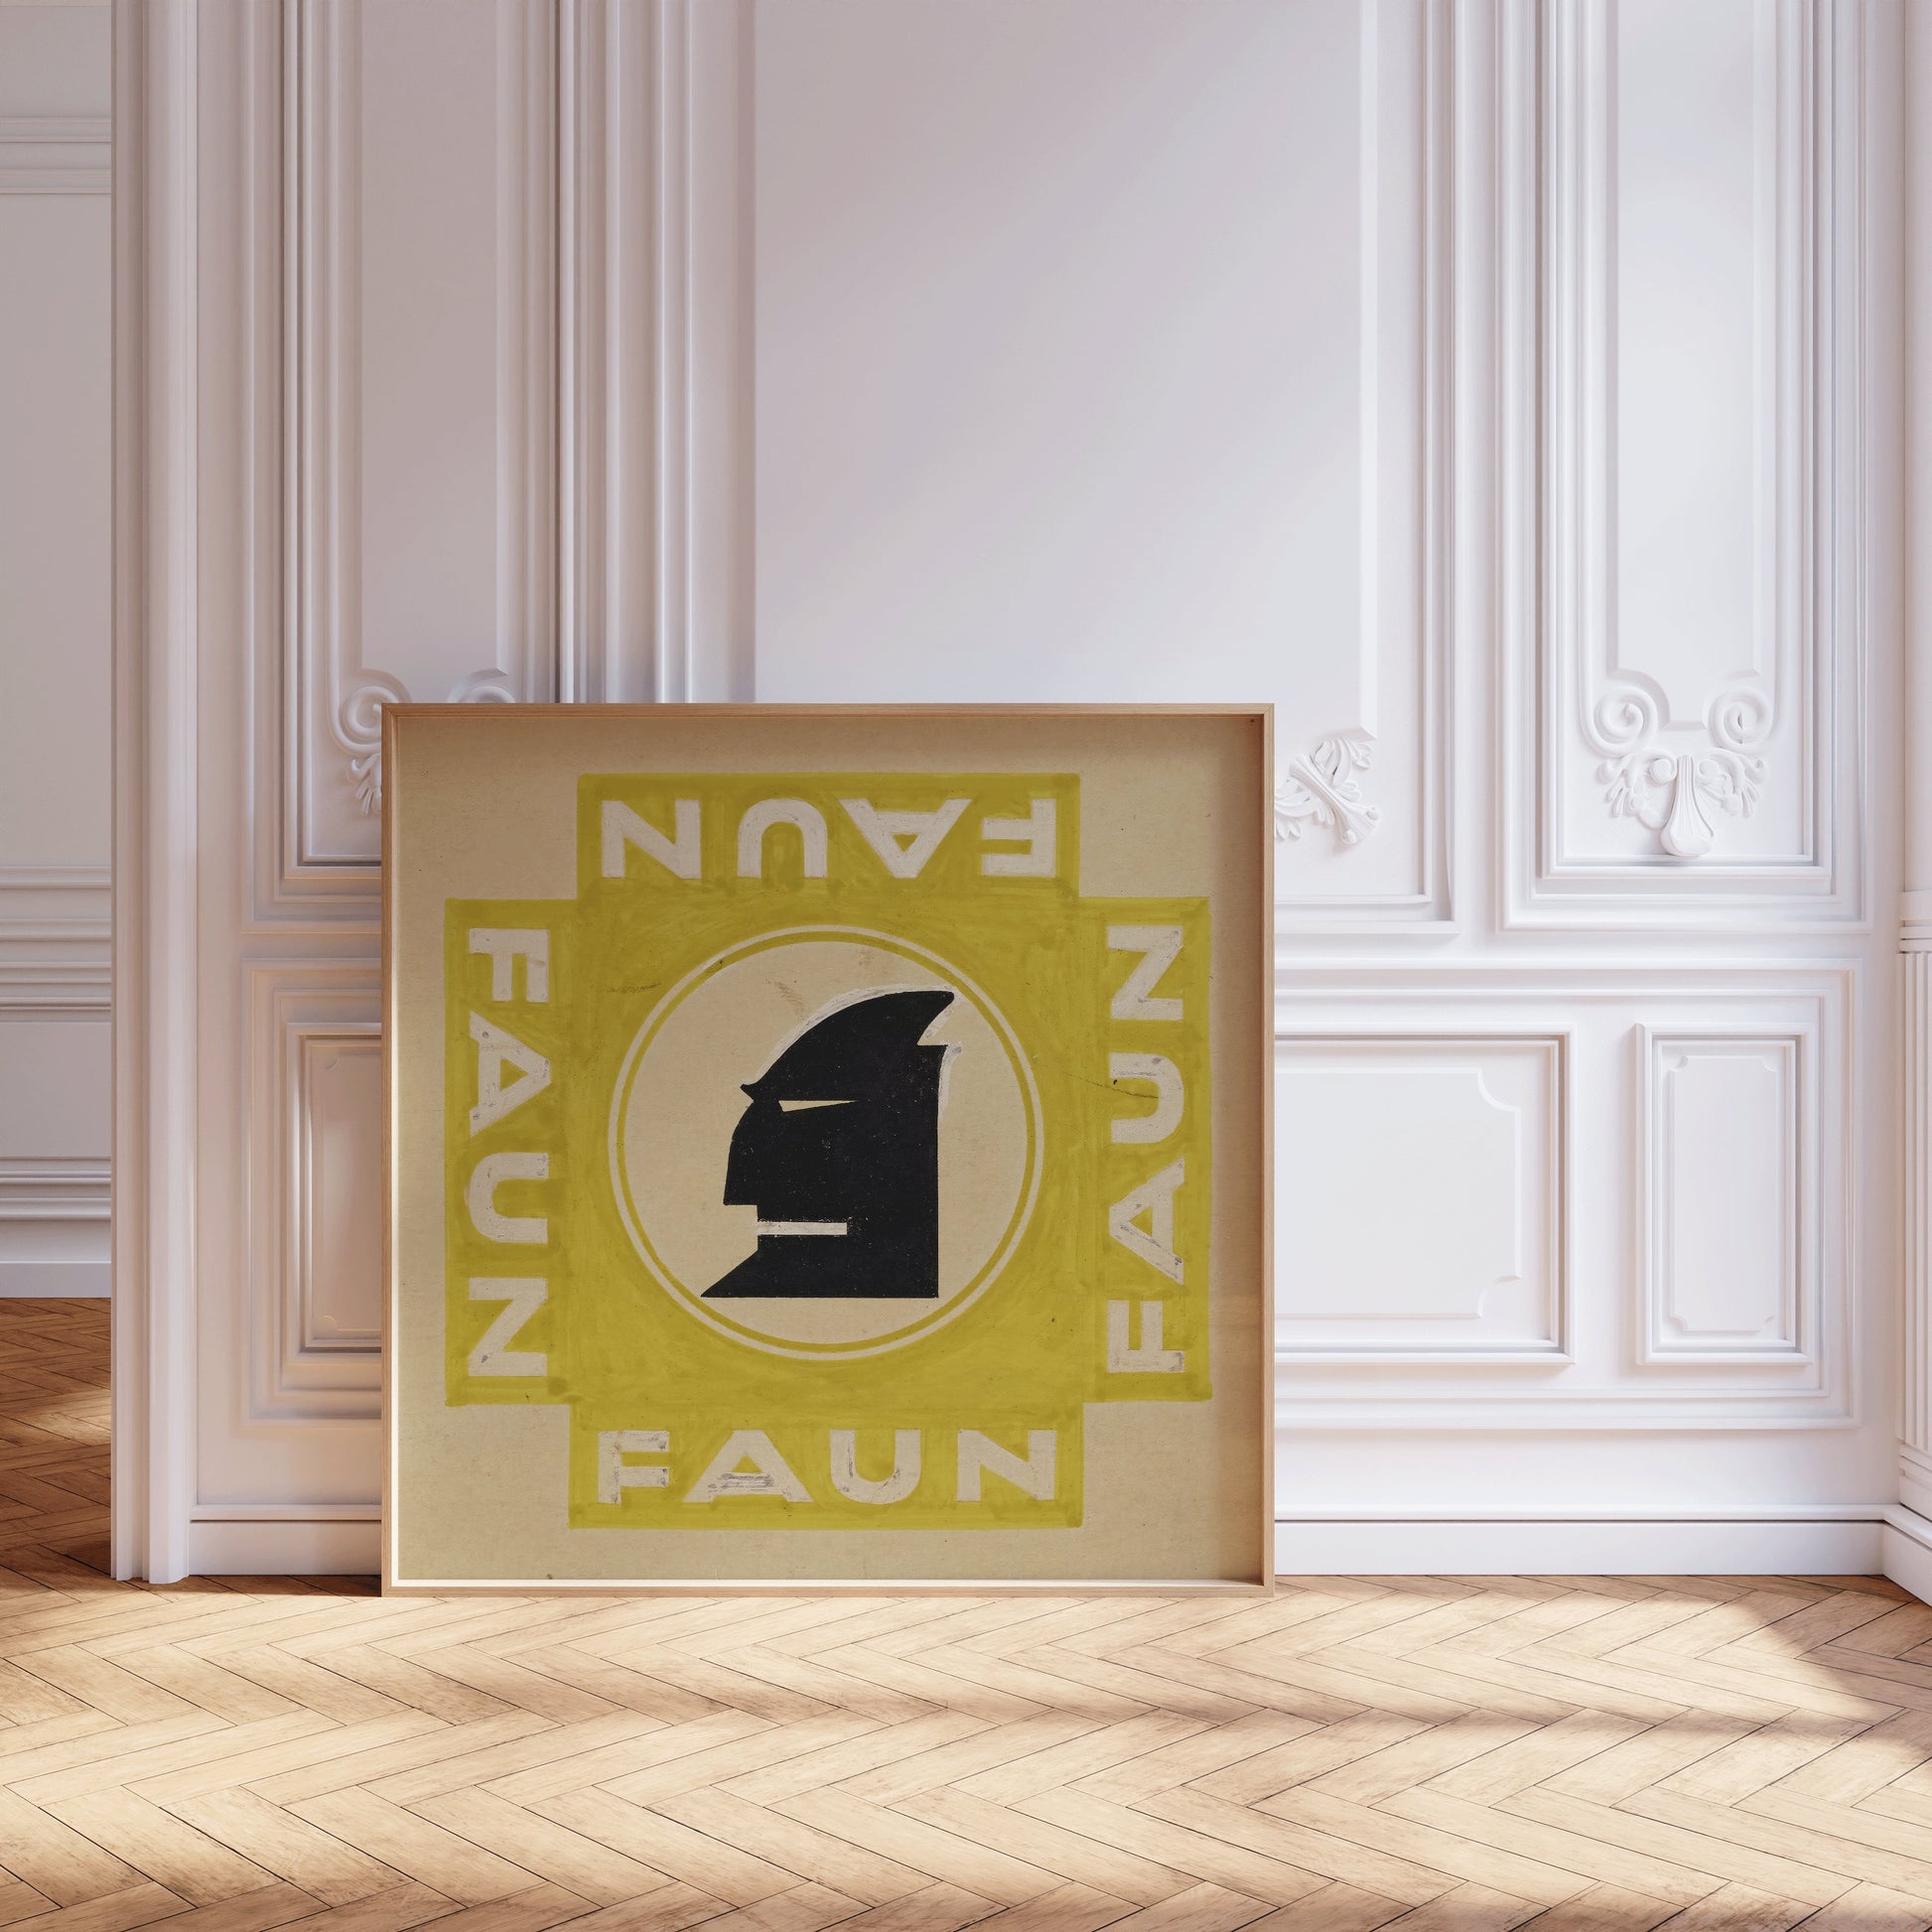 Set of 3 Vintage Bauhaus Posters | Available framed or unframed